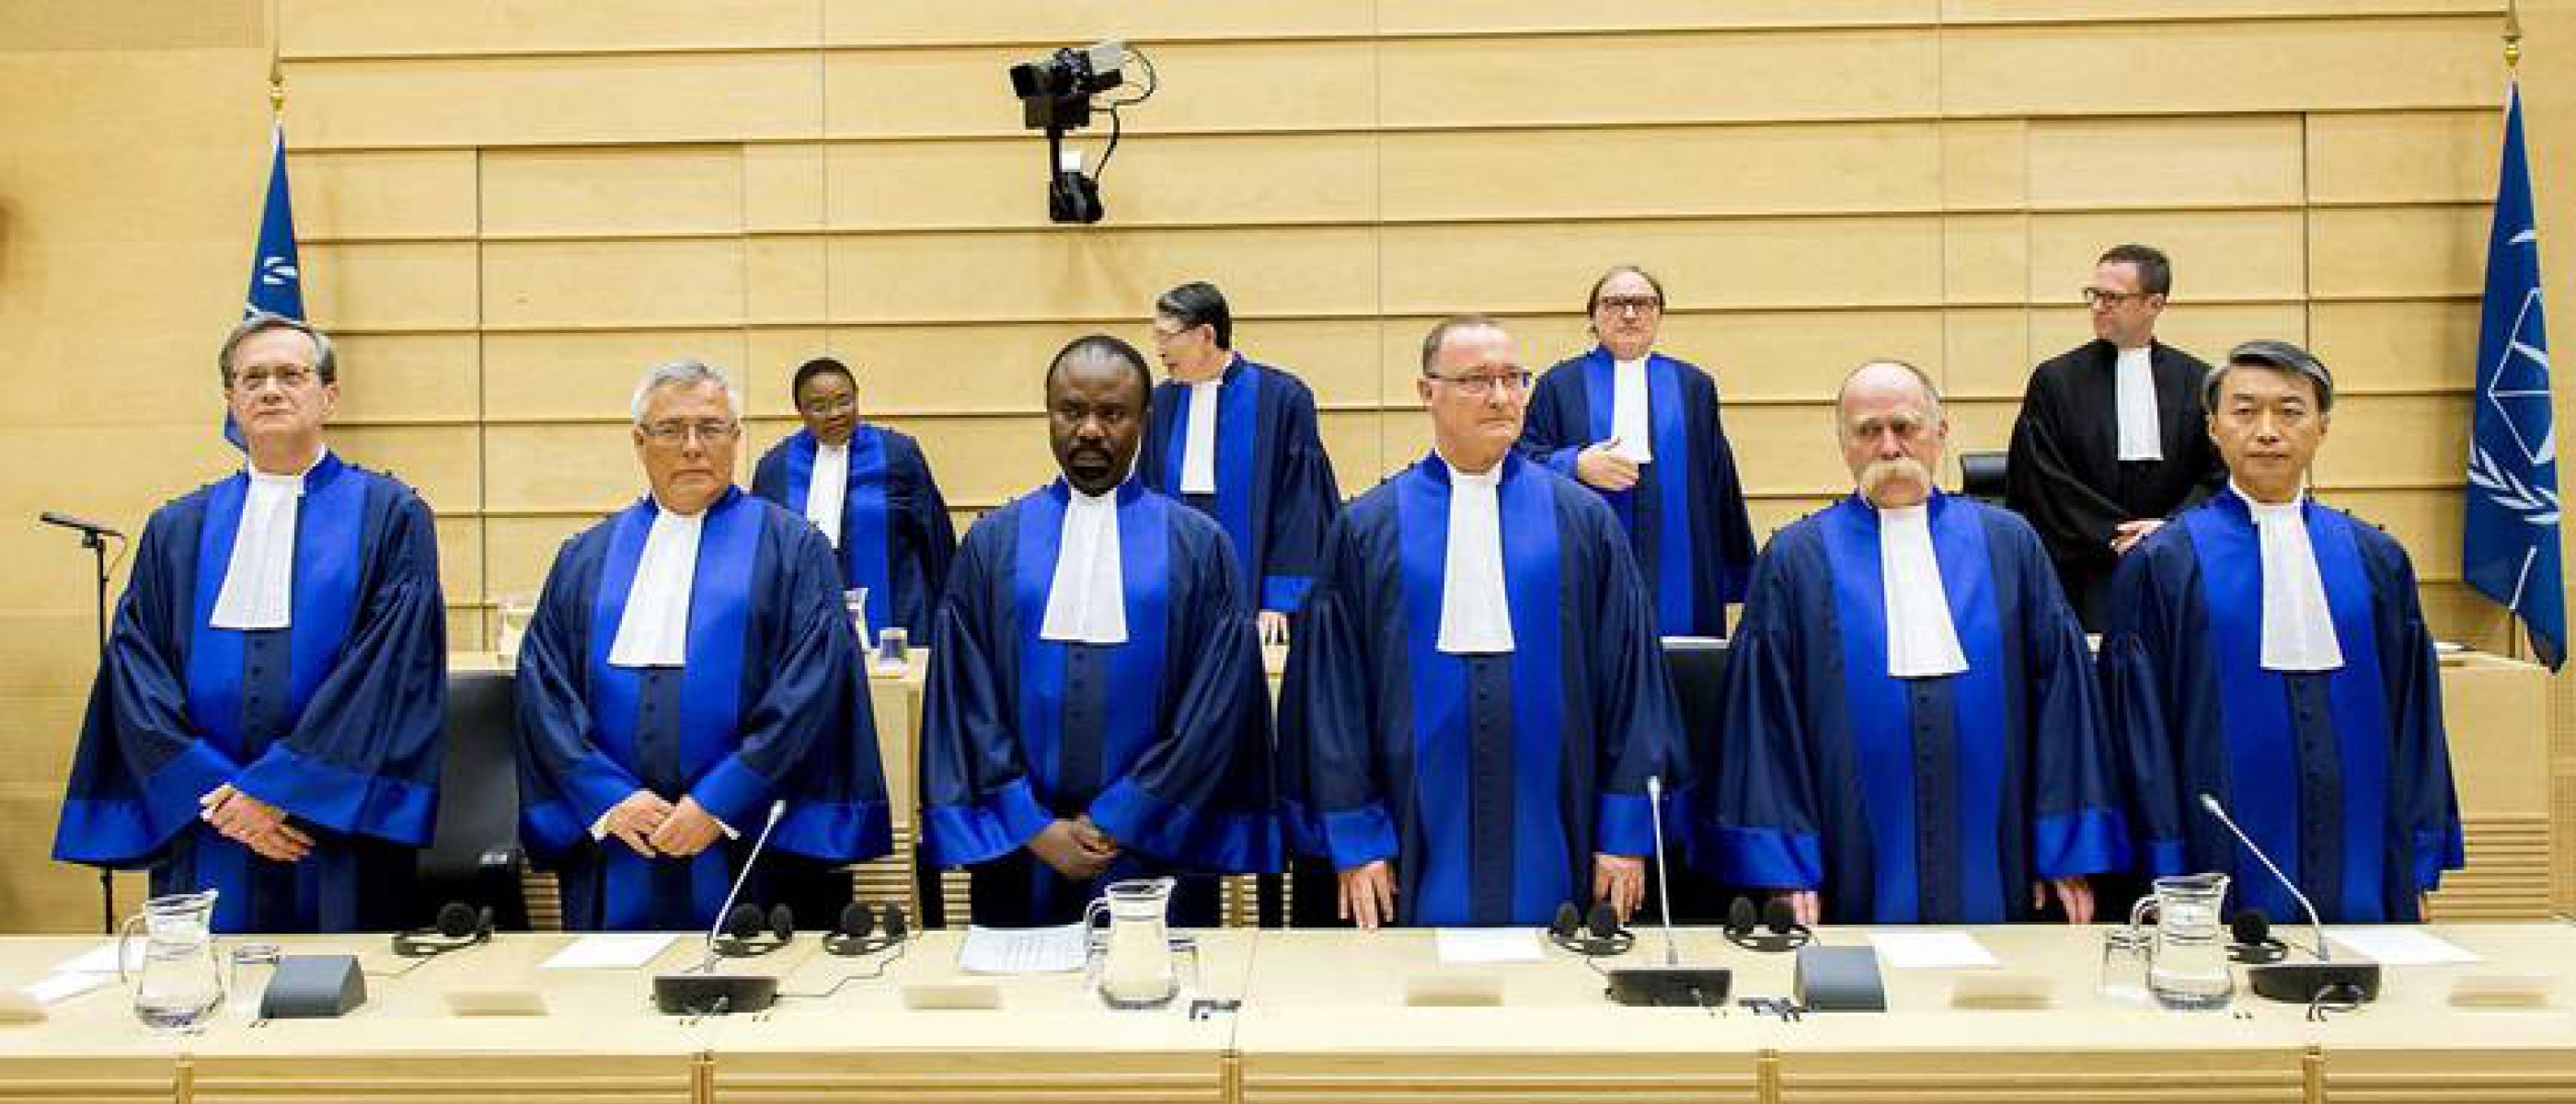 О судах и судьях. Международный трибунал в Гааге. Международный суд ООН. Римский статут международного уголовного суда. Прокурор Гаагского трибунала Африка.